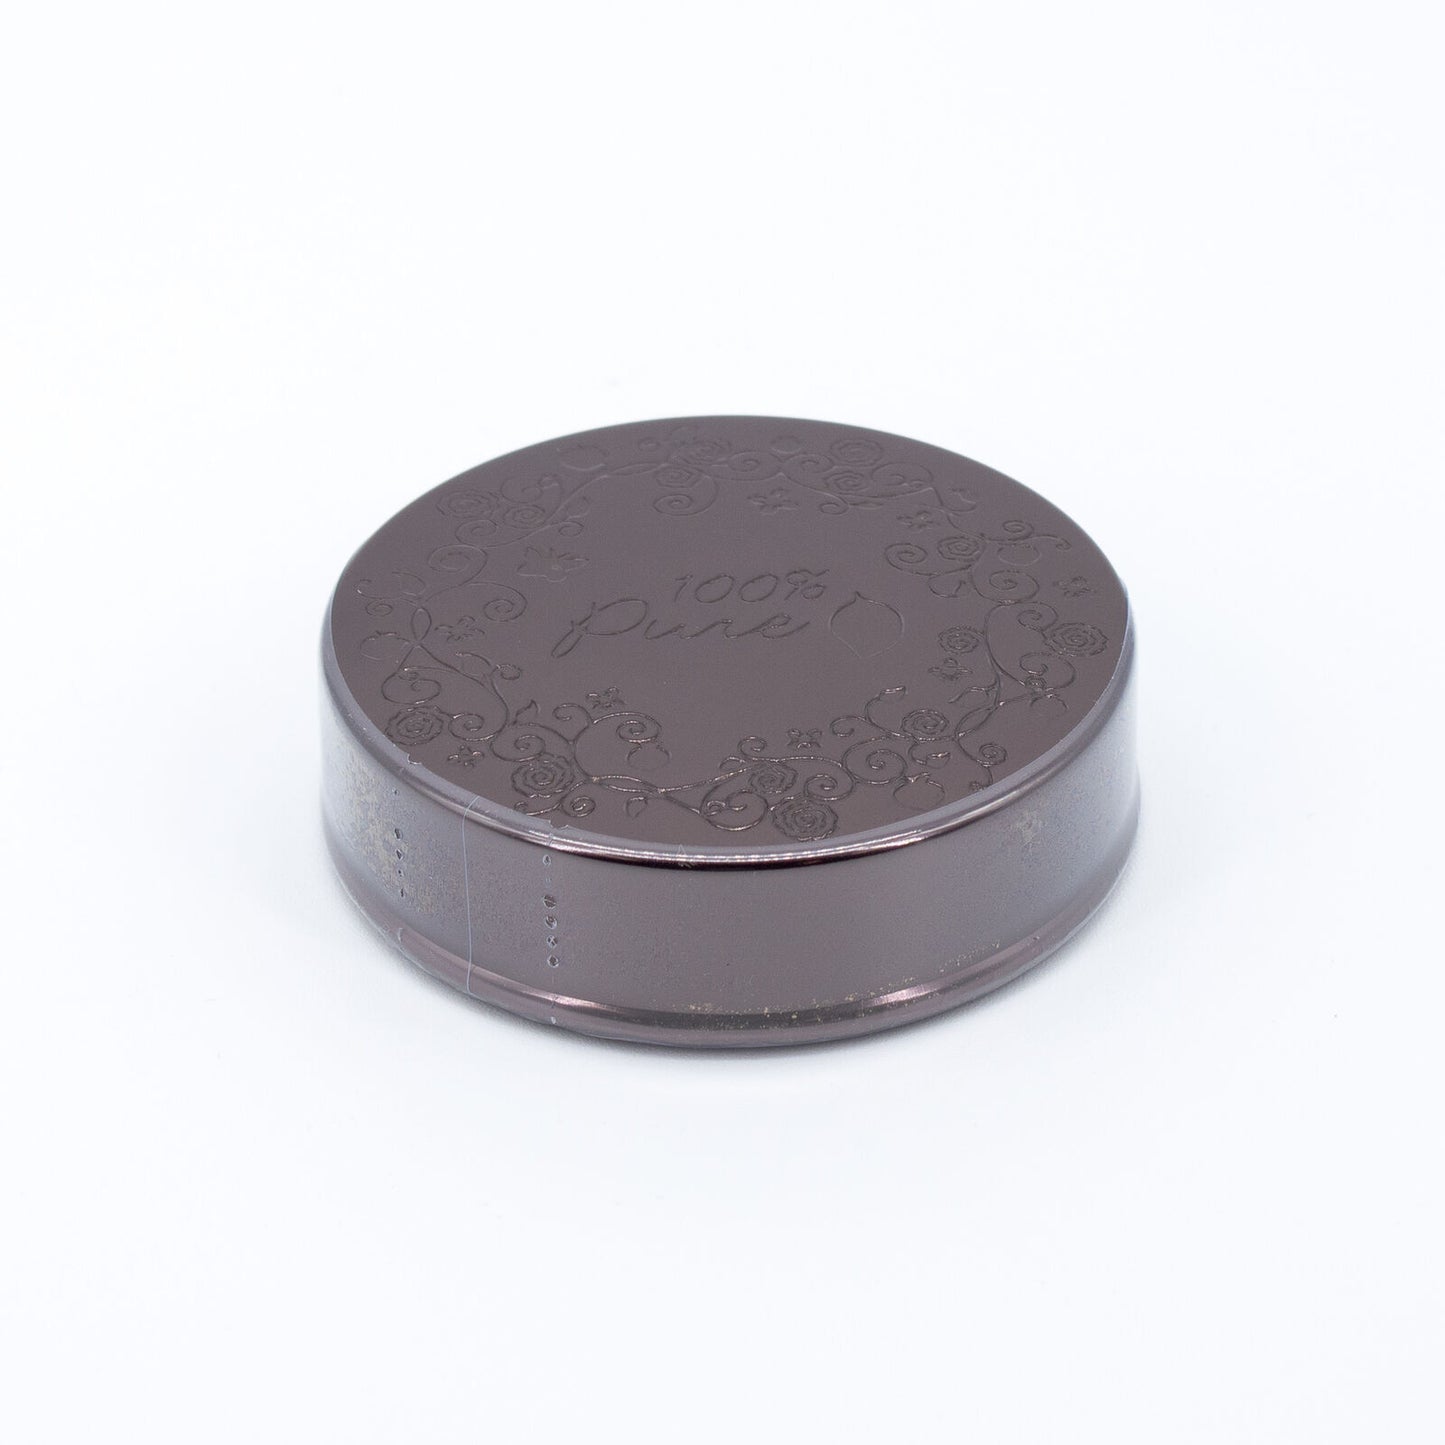 100% Pure Cocoa Pigmented Bronzer COCOA GEM 0.32oz - New